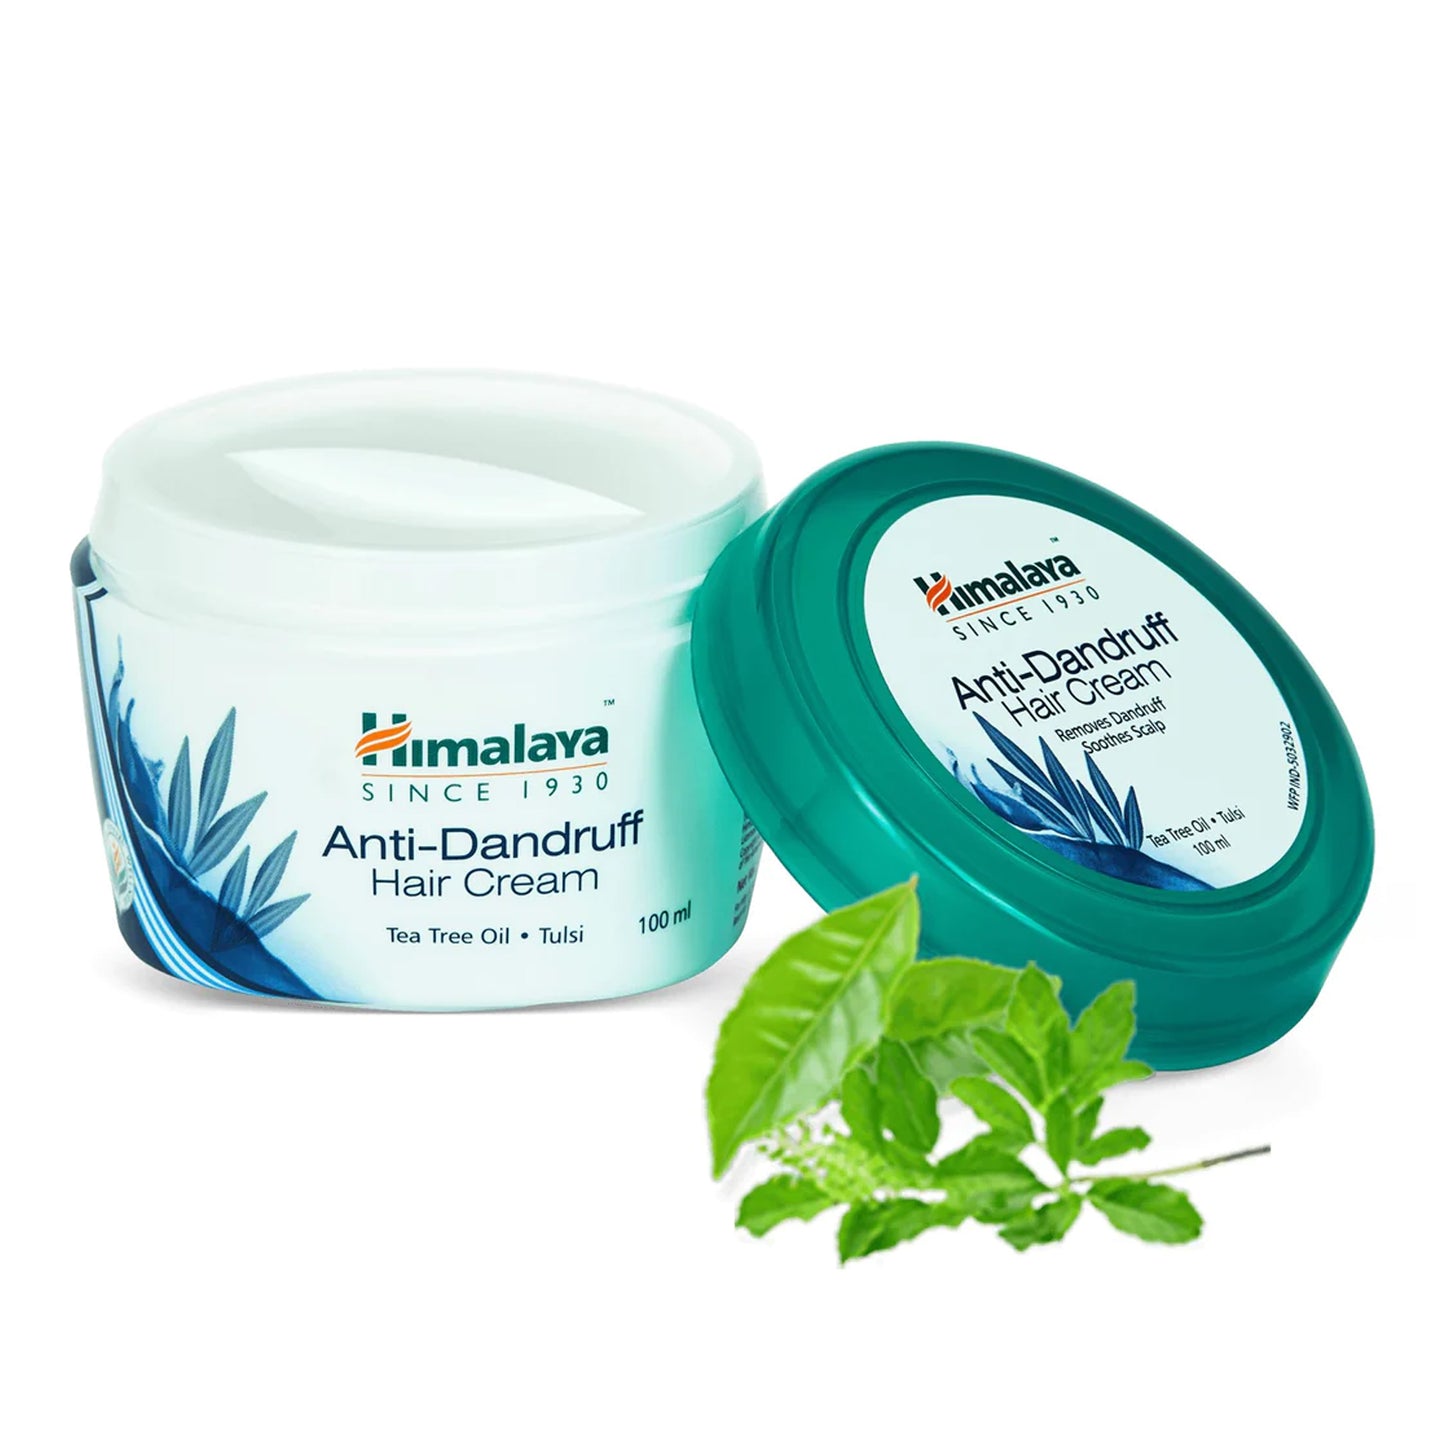 HIMALAYA - ANTI-DANDRUFF HAIR CREAM WITH TEA TREE OIL & TULSI - 100ML